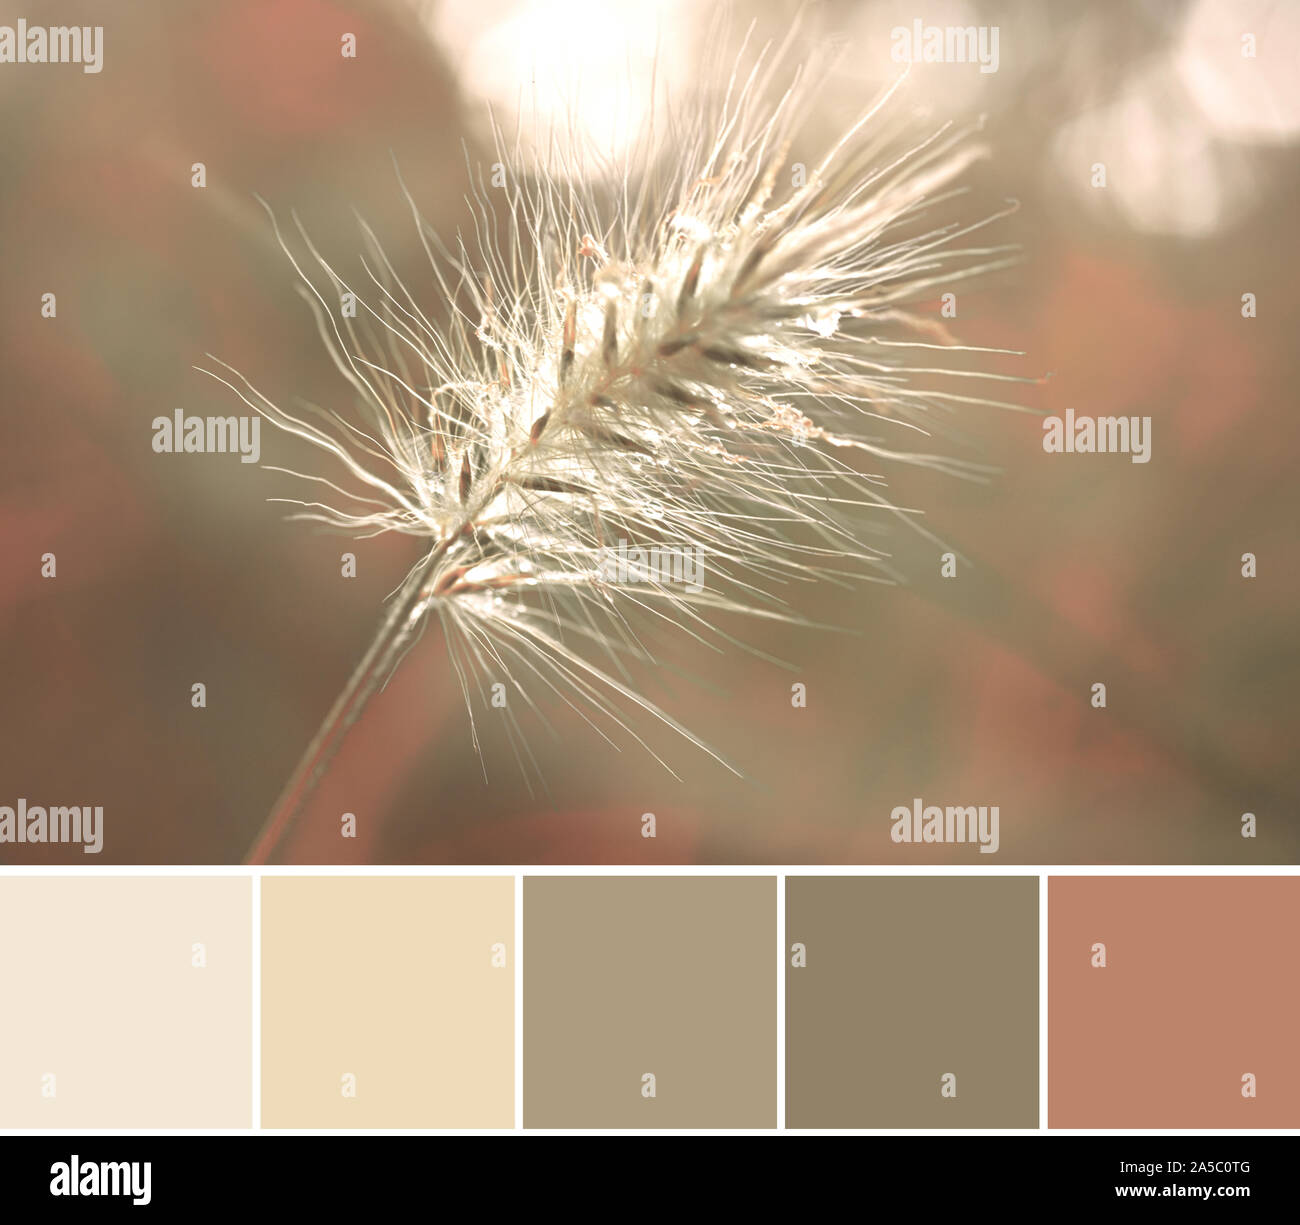 Corrispondenza dei colori naturali analoghi autunno tavolozza dei colori da un close-up immagine della coda di coniglio testa di erba Foto Stock